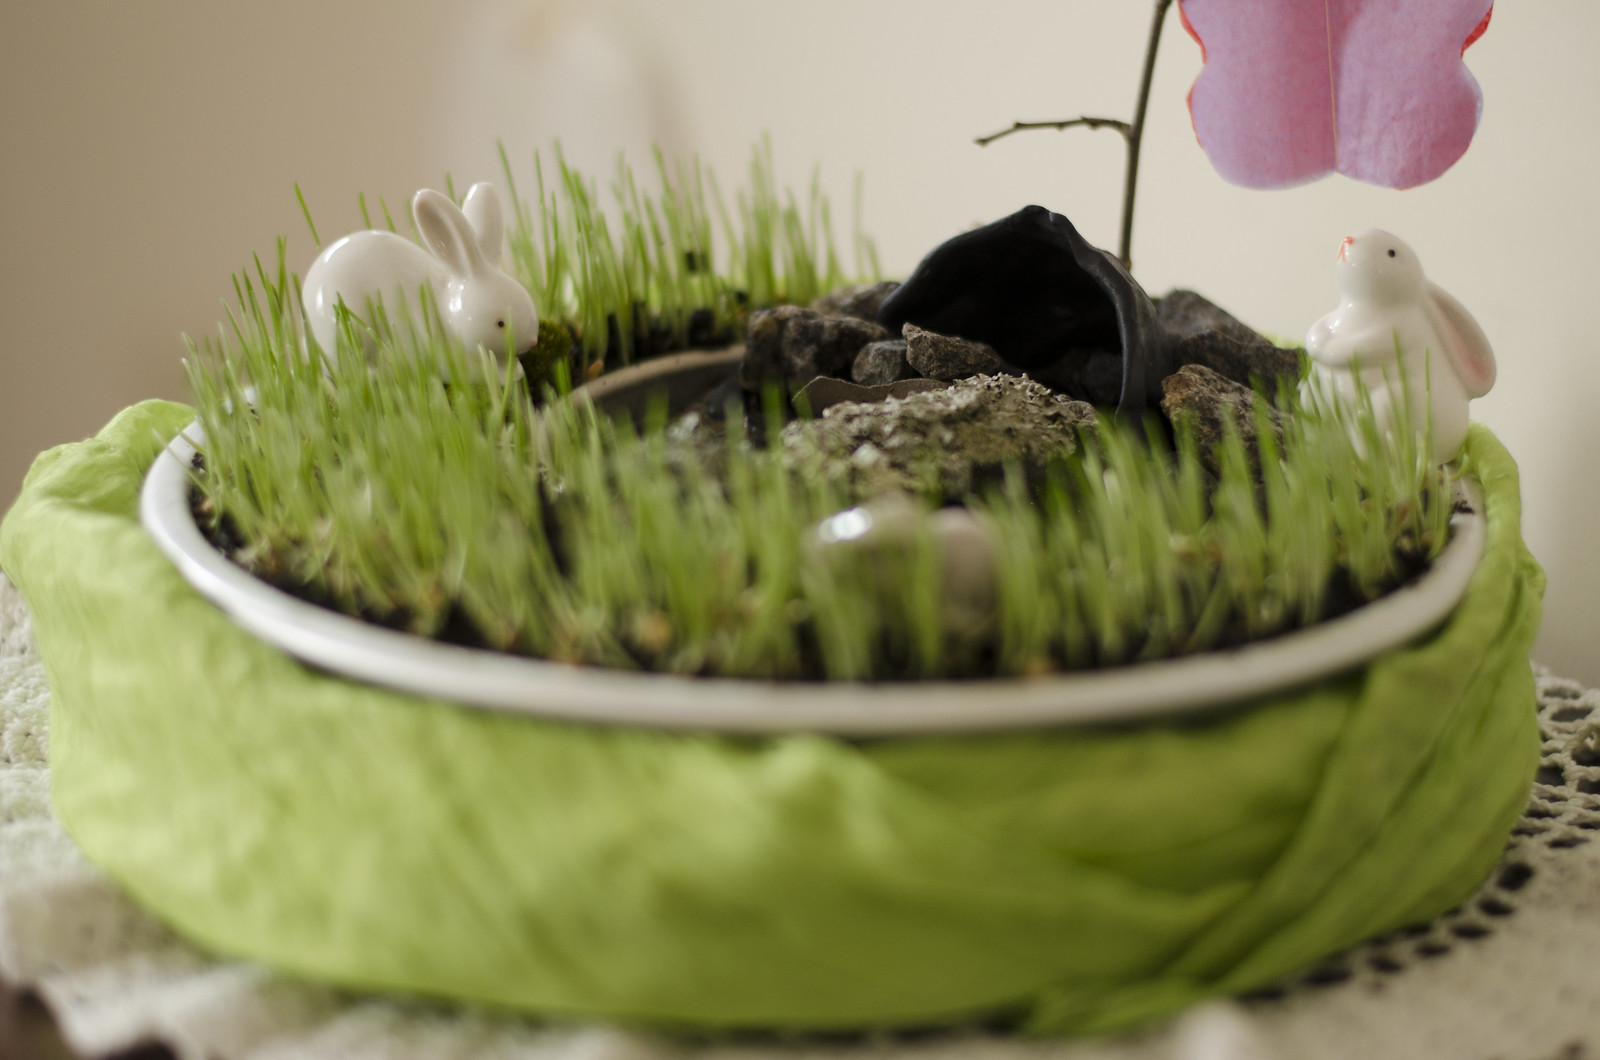 How to Plant Lenten Grass (Easter Grass)